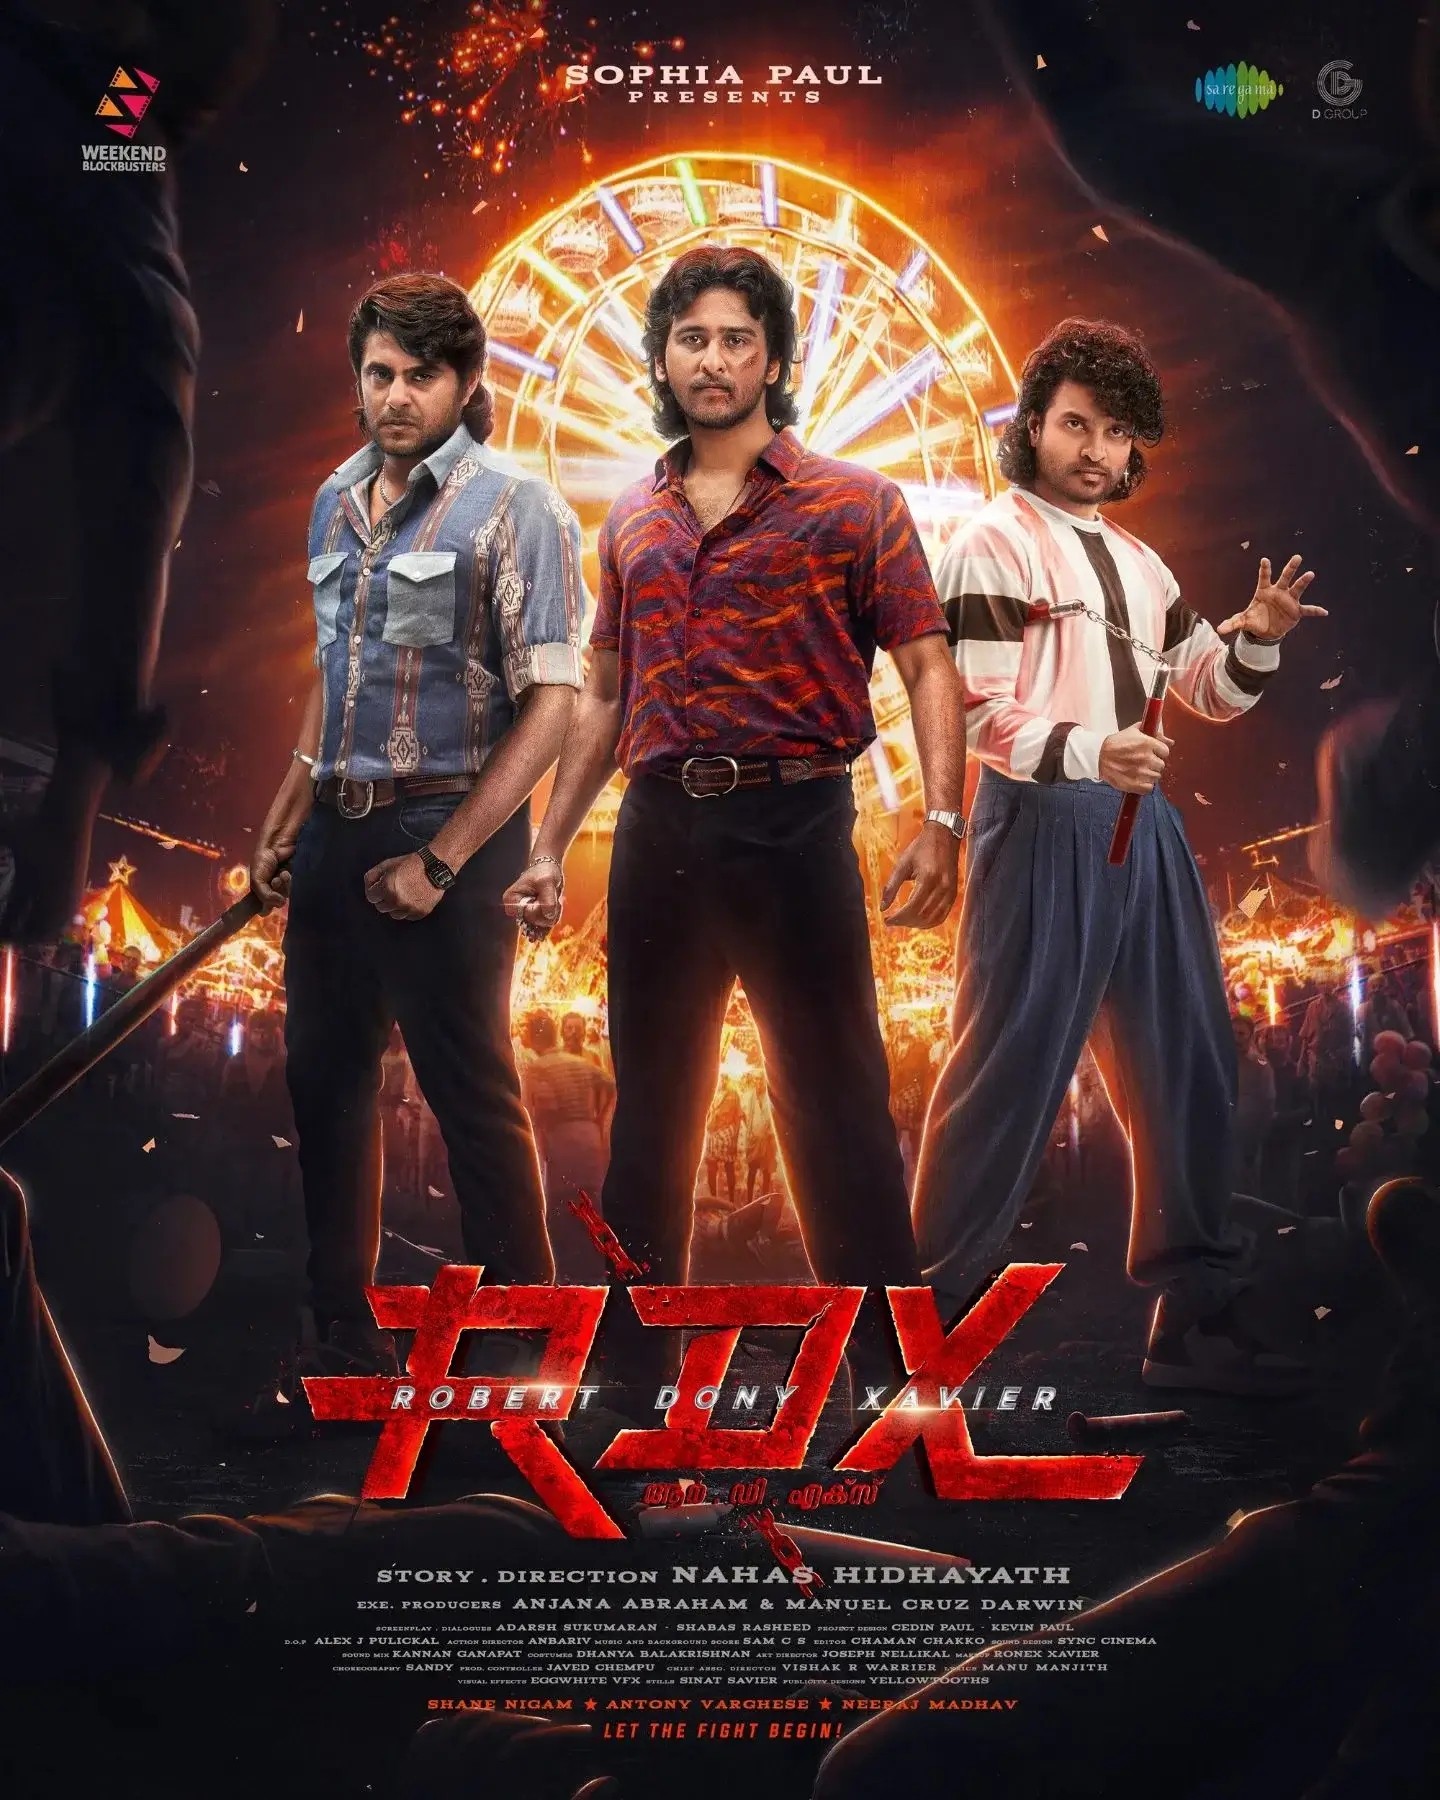 rdx malayalam movie review in malayalam